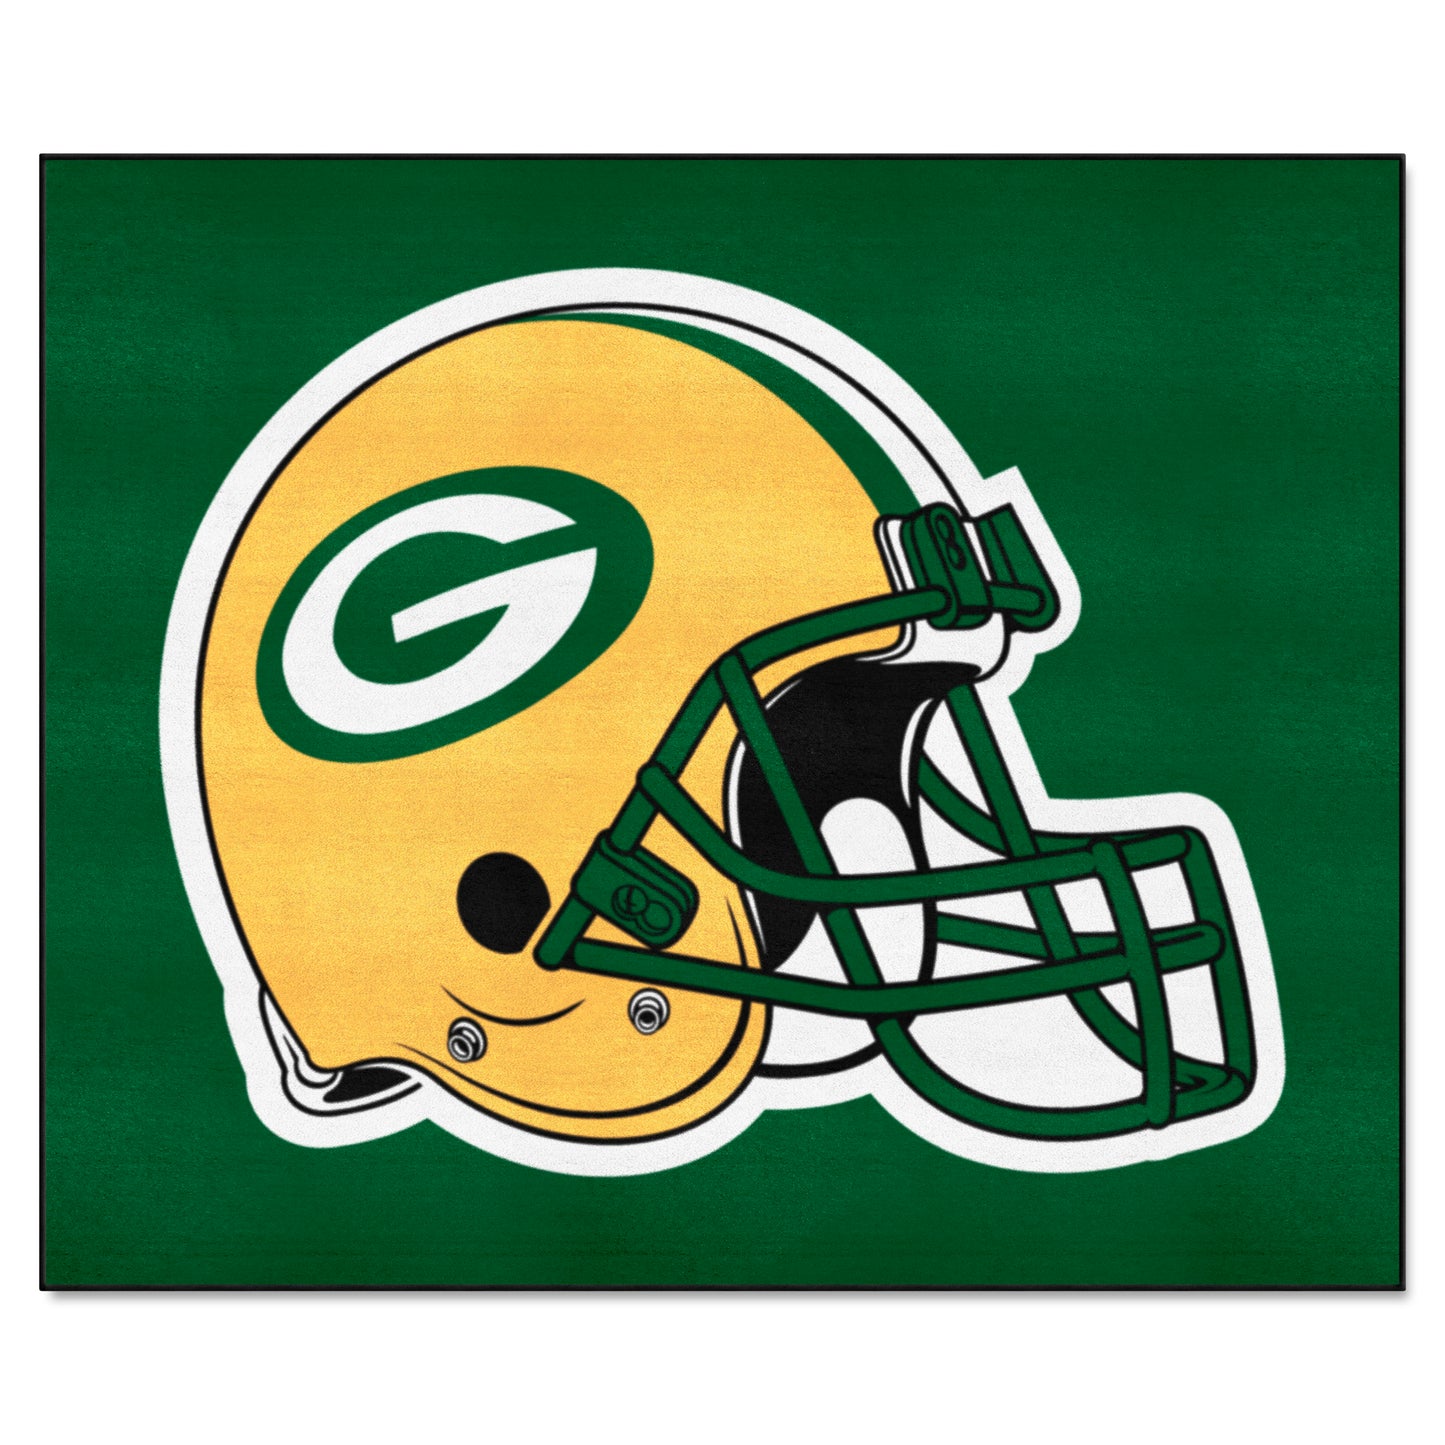 Green Bay Packers Tailgater Rug - 5ft. x 6ft. - Packers Helmet Logo